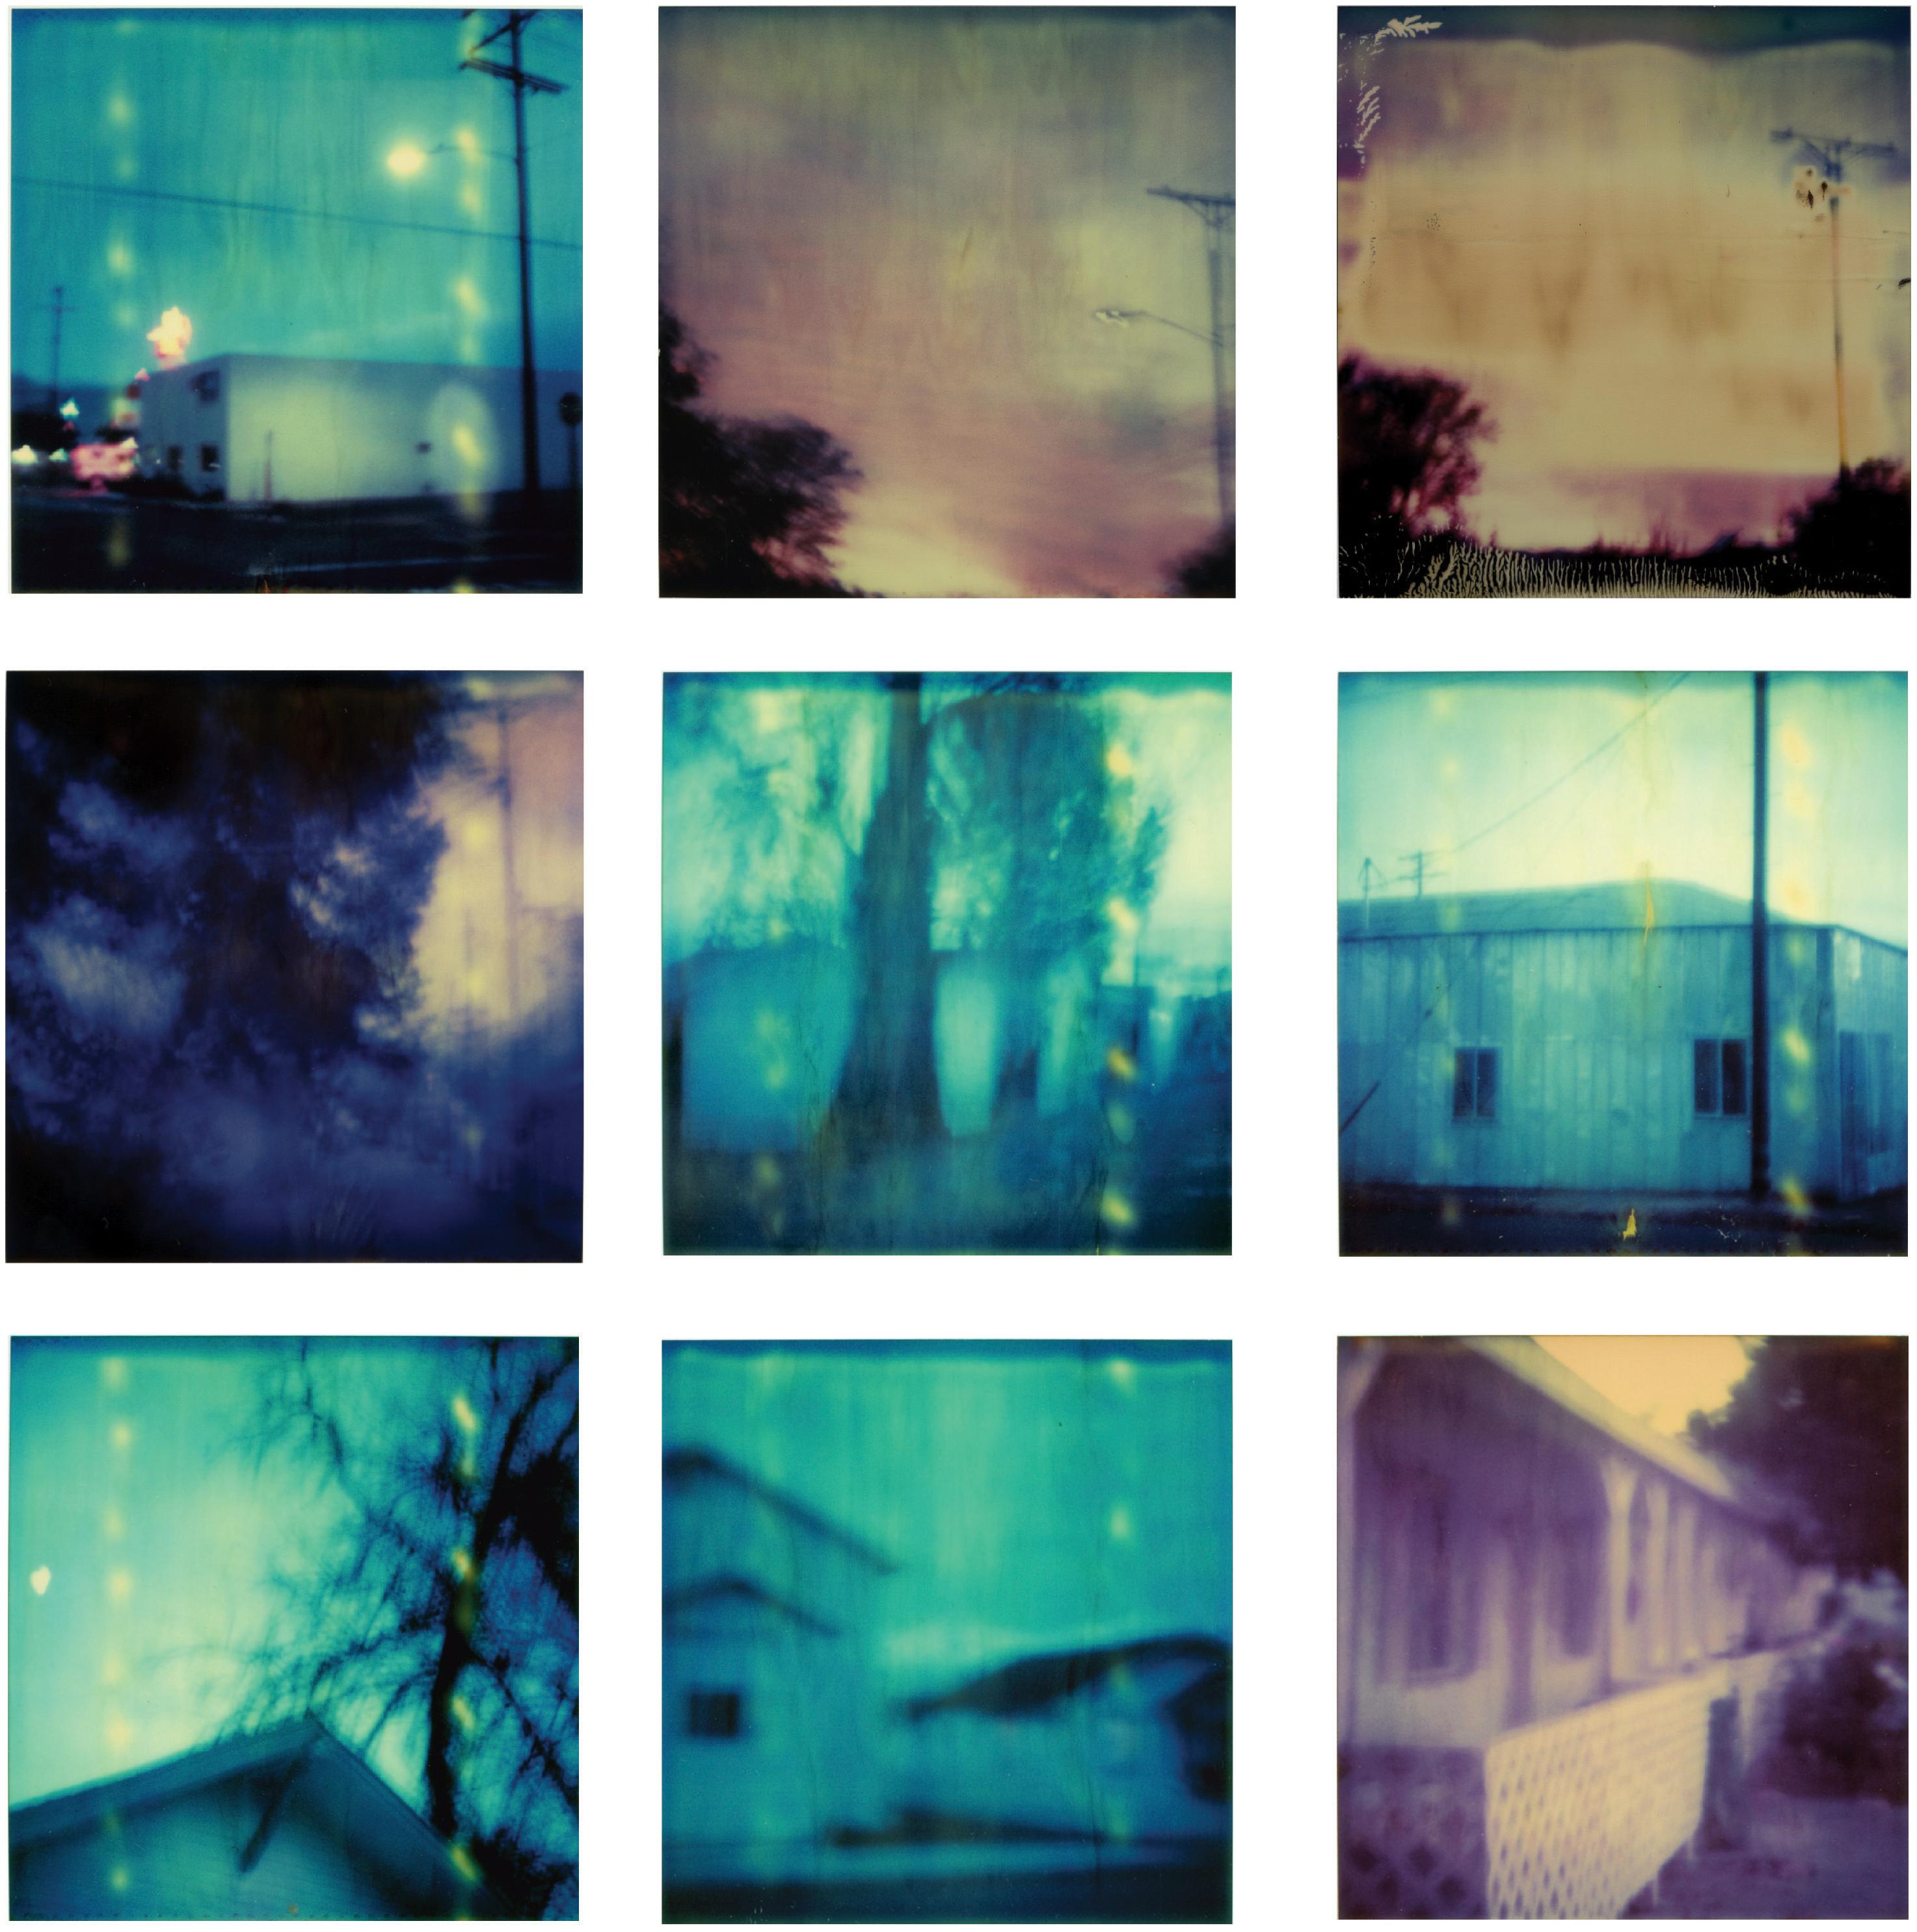 Stefanie Schneider Landscape Photograph - Dusk - Contemporary, Abstract, Landscape, Polaroid, Photograph, analog, 9 pieces